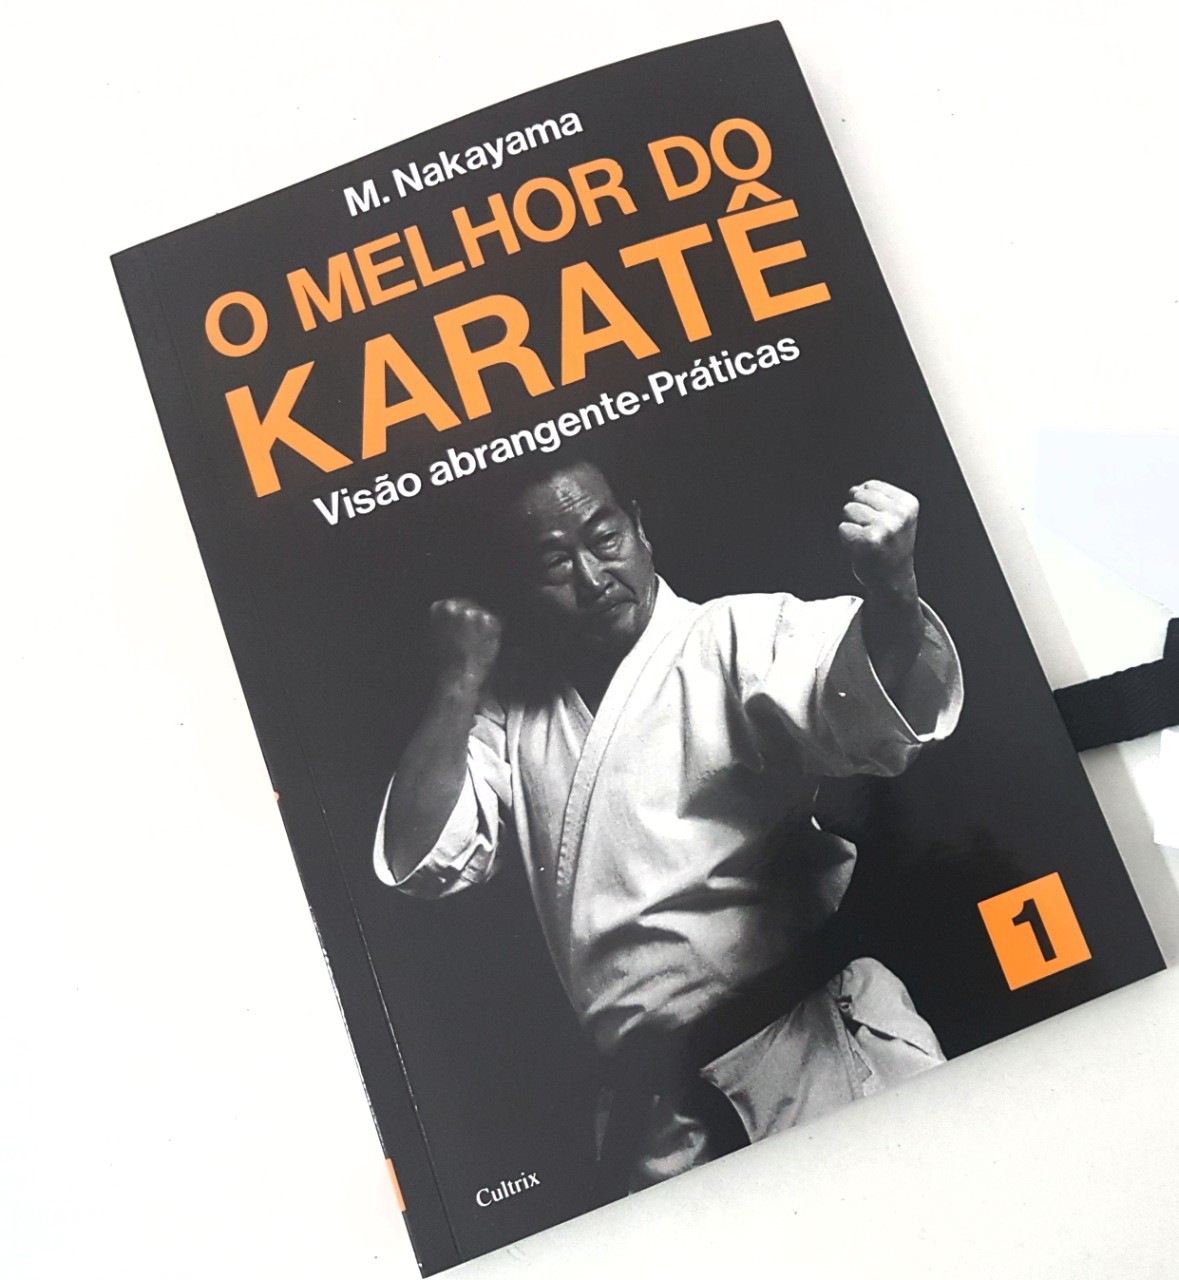 Livro Melhor do Karate Volume 1 - Visão Abrangente, praticas